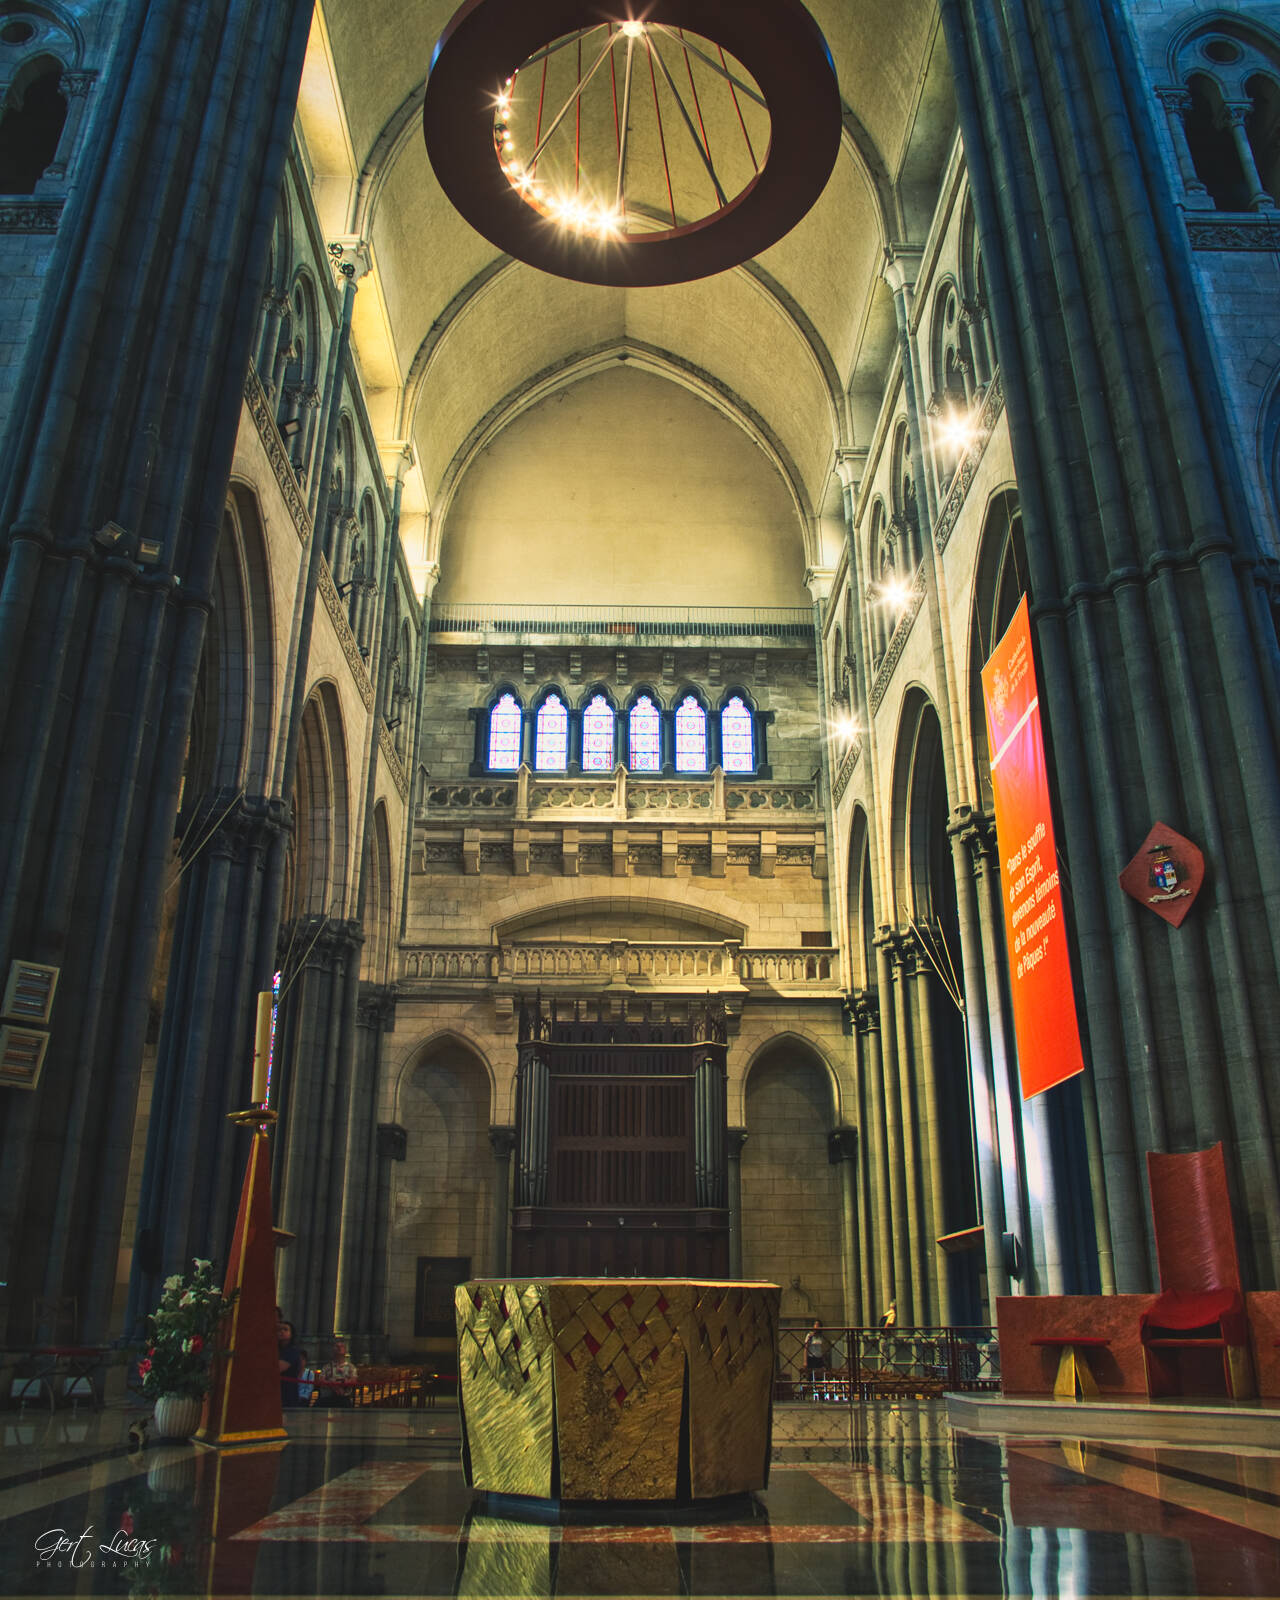 Image of Notre-Dame-de-la-Treille Cathedral by Gert Lucas